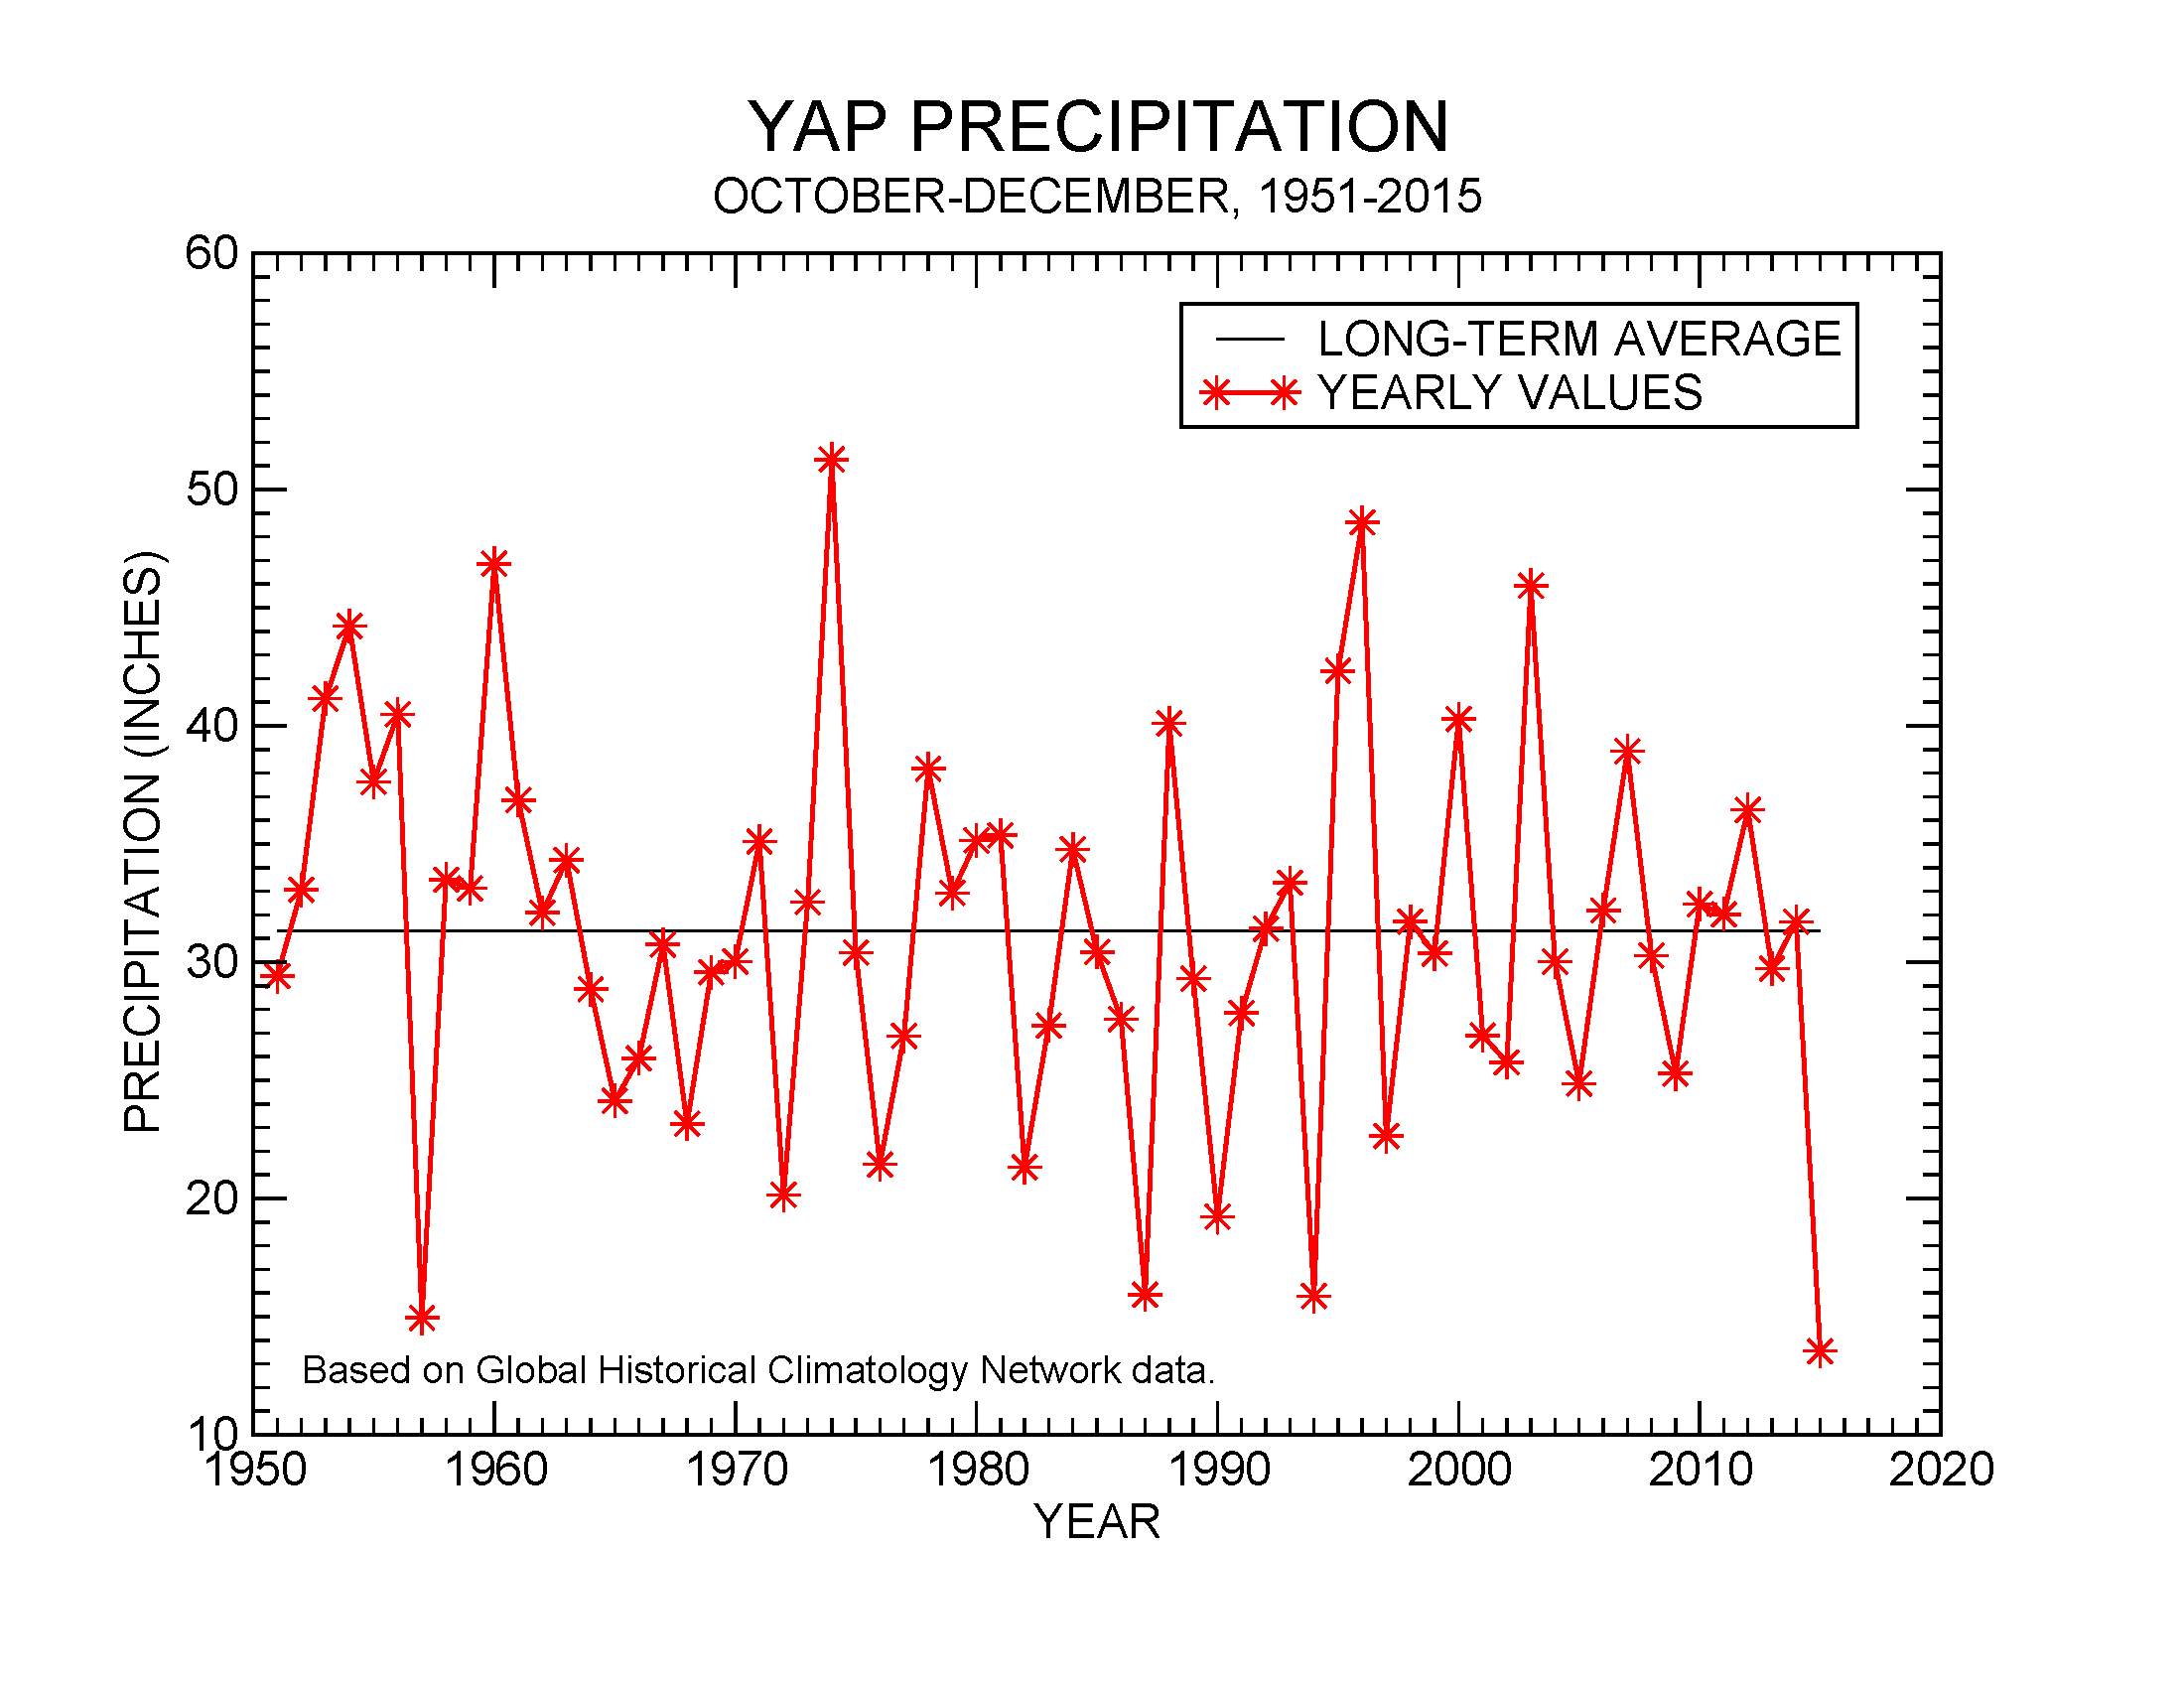 Precipitation at Yap, October-December, 1951-2015